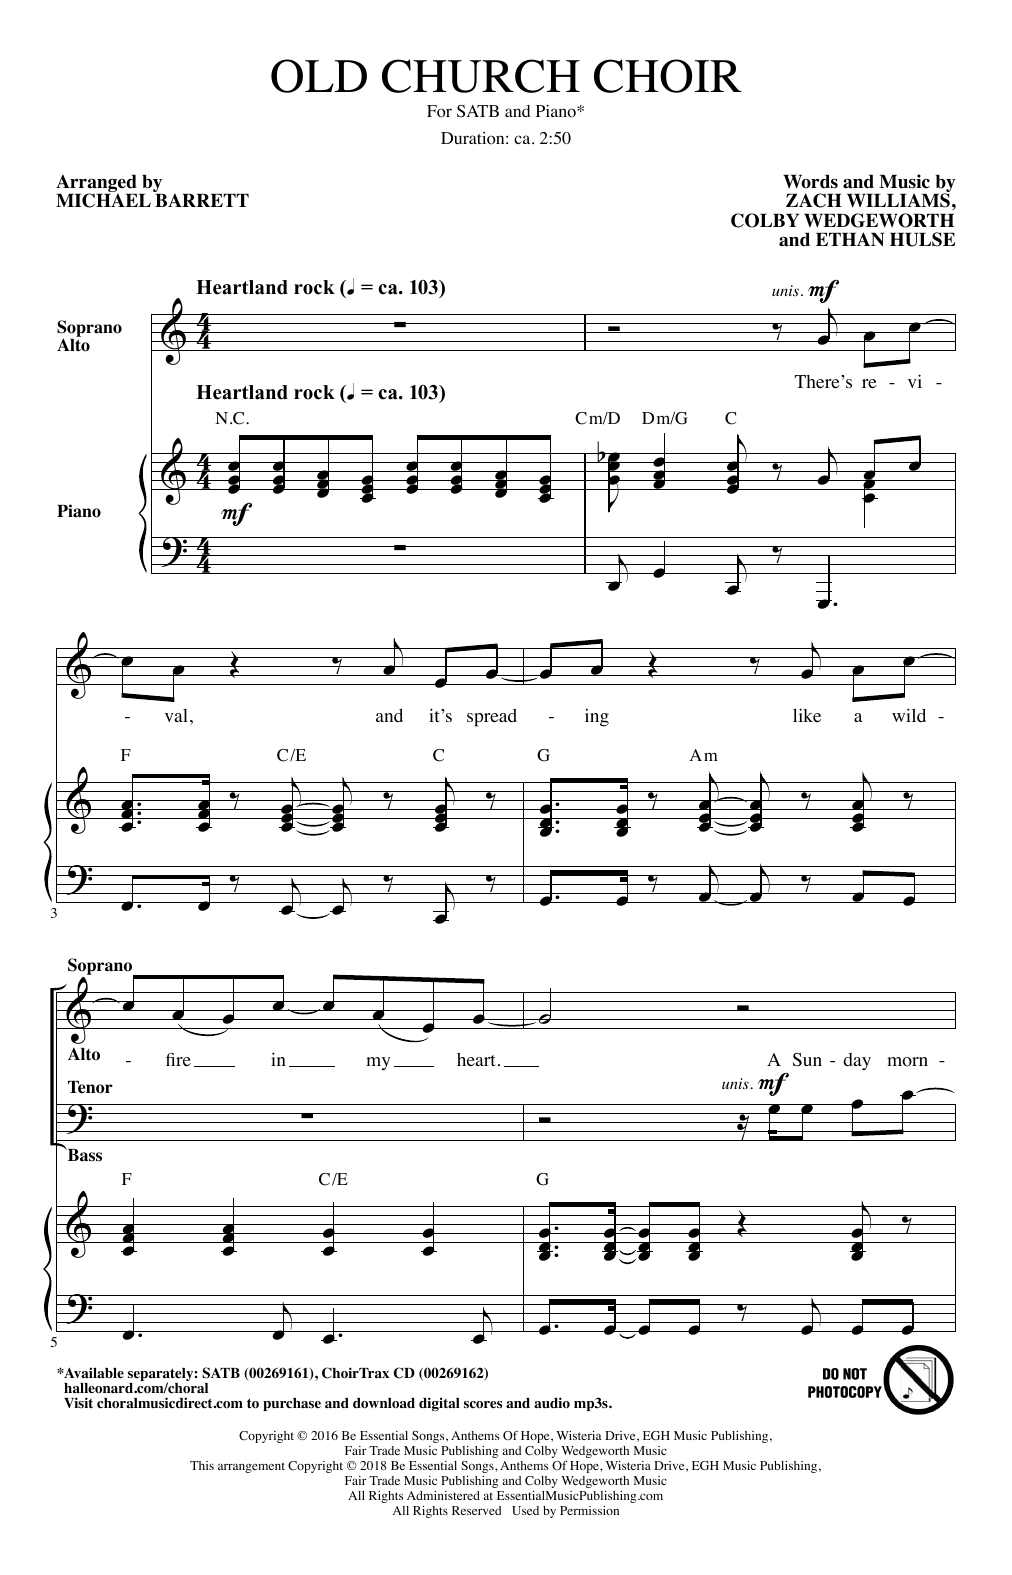 Zach Williams Old Church Choir (arr. Michael Barrett) sheet music notes and chords arranged for SATB Choir